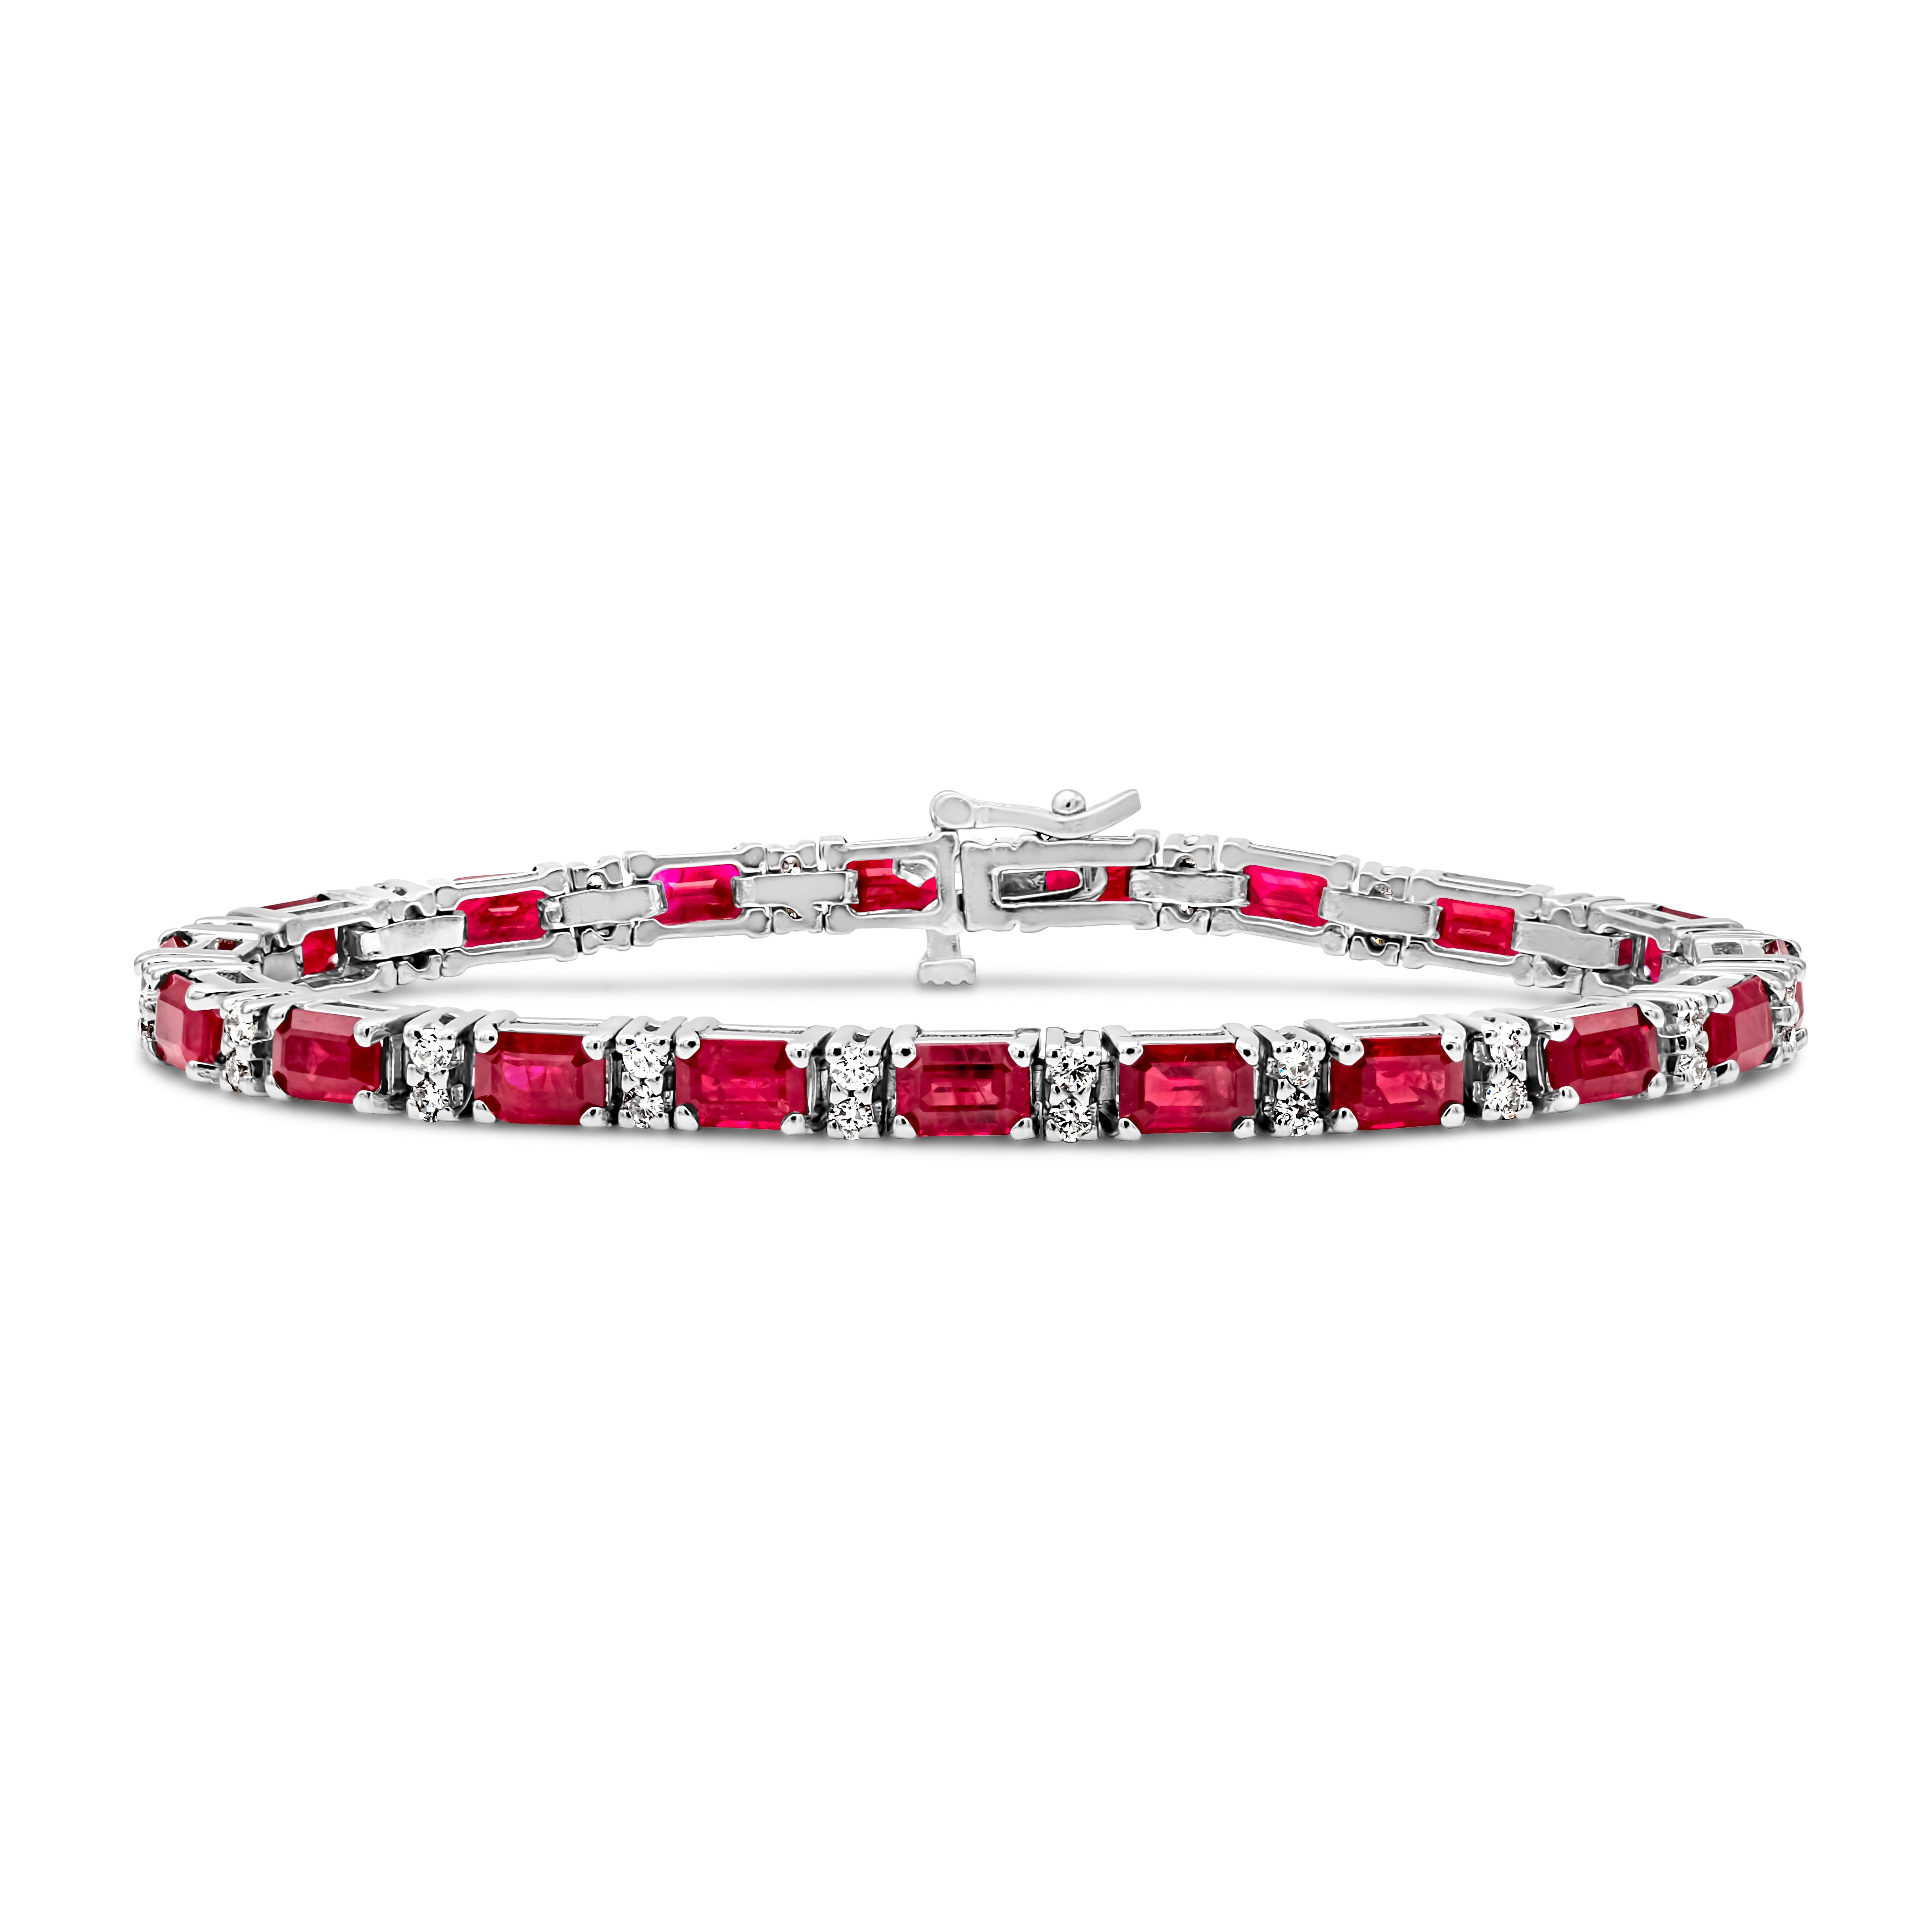 Un bracelet de tennis exquis et simple mettant en valeur un rubis rouge riche en couleurs, taillé en émeraude, pesant 12,33 carats au total, serti dans une monture classique à quatre griffes. Deux diamants ronds de taille brillant, d'un poids total